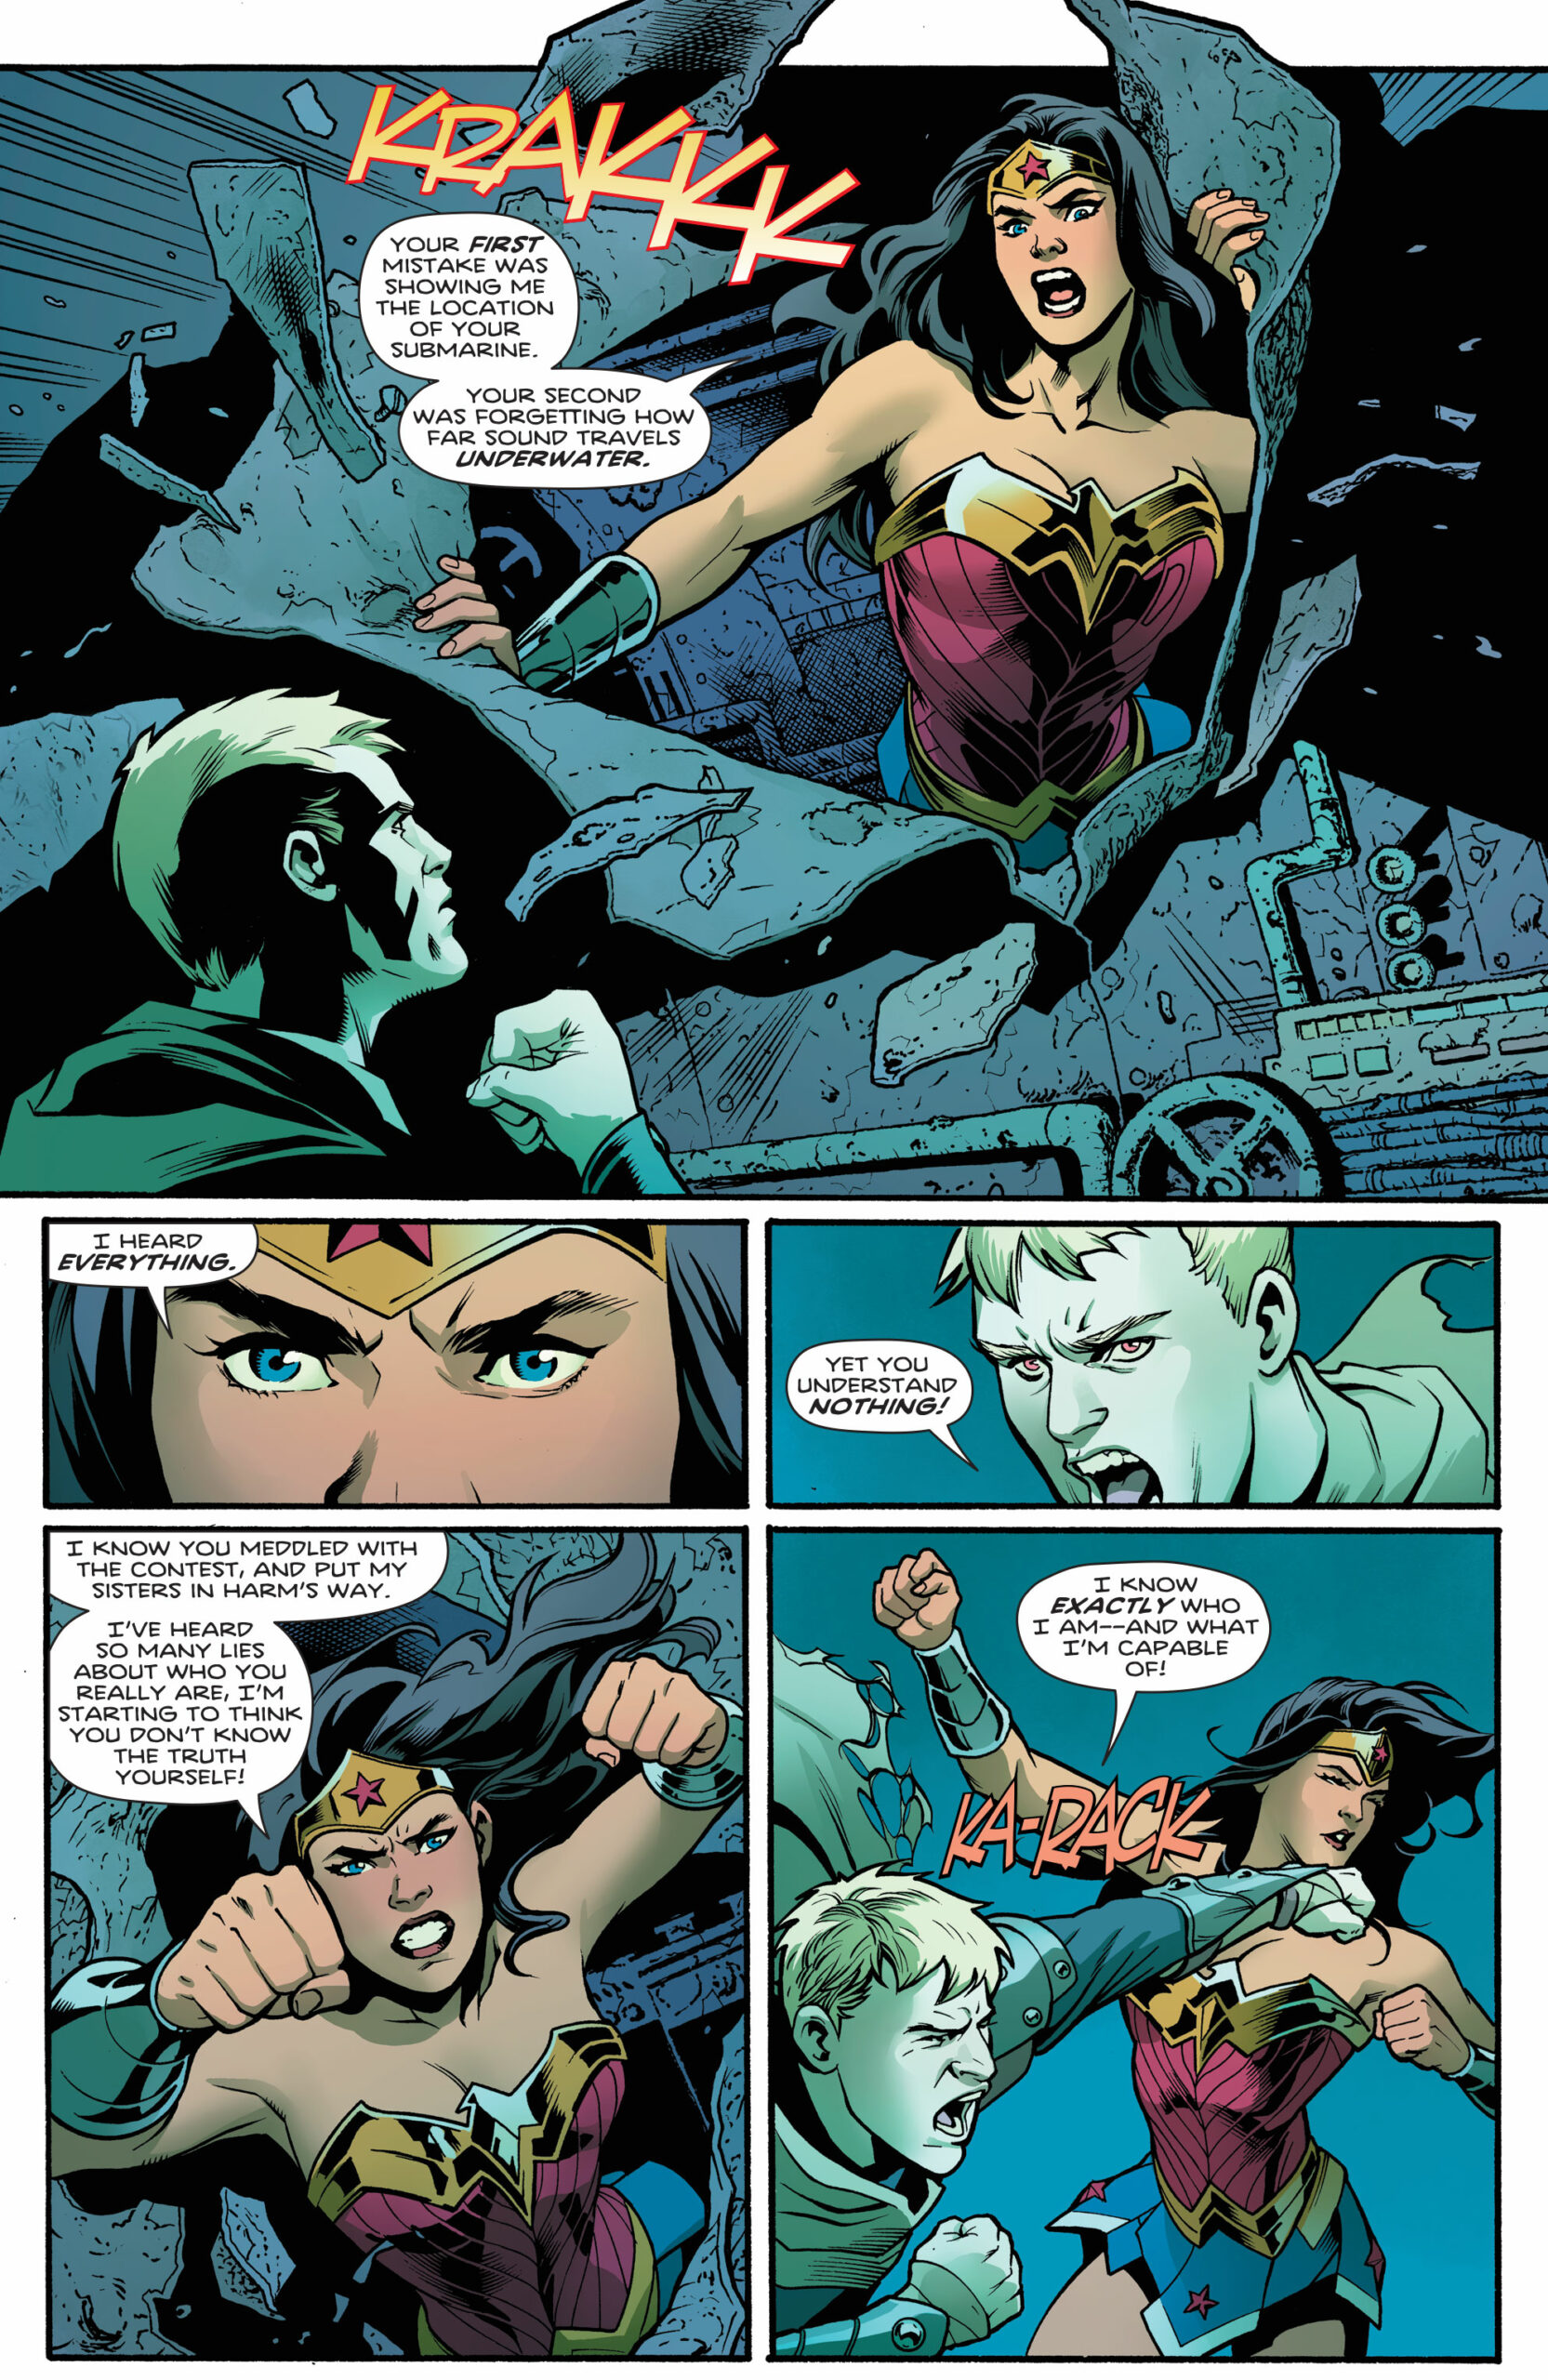 Wonder Woman Kills Huntress kelly dallas